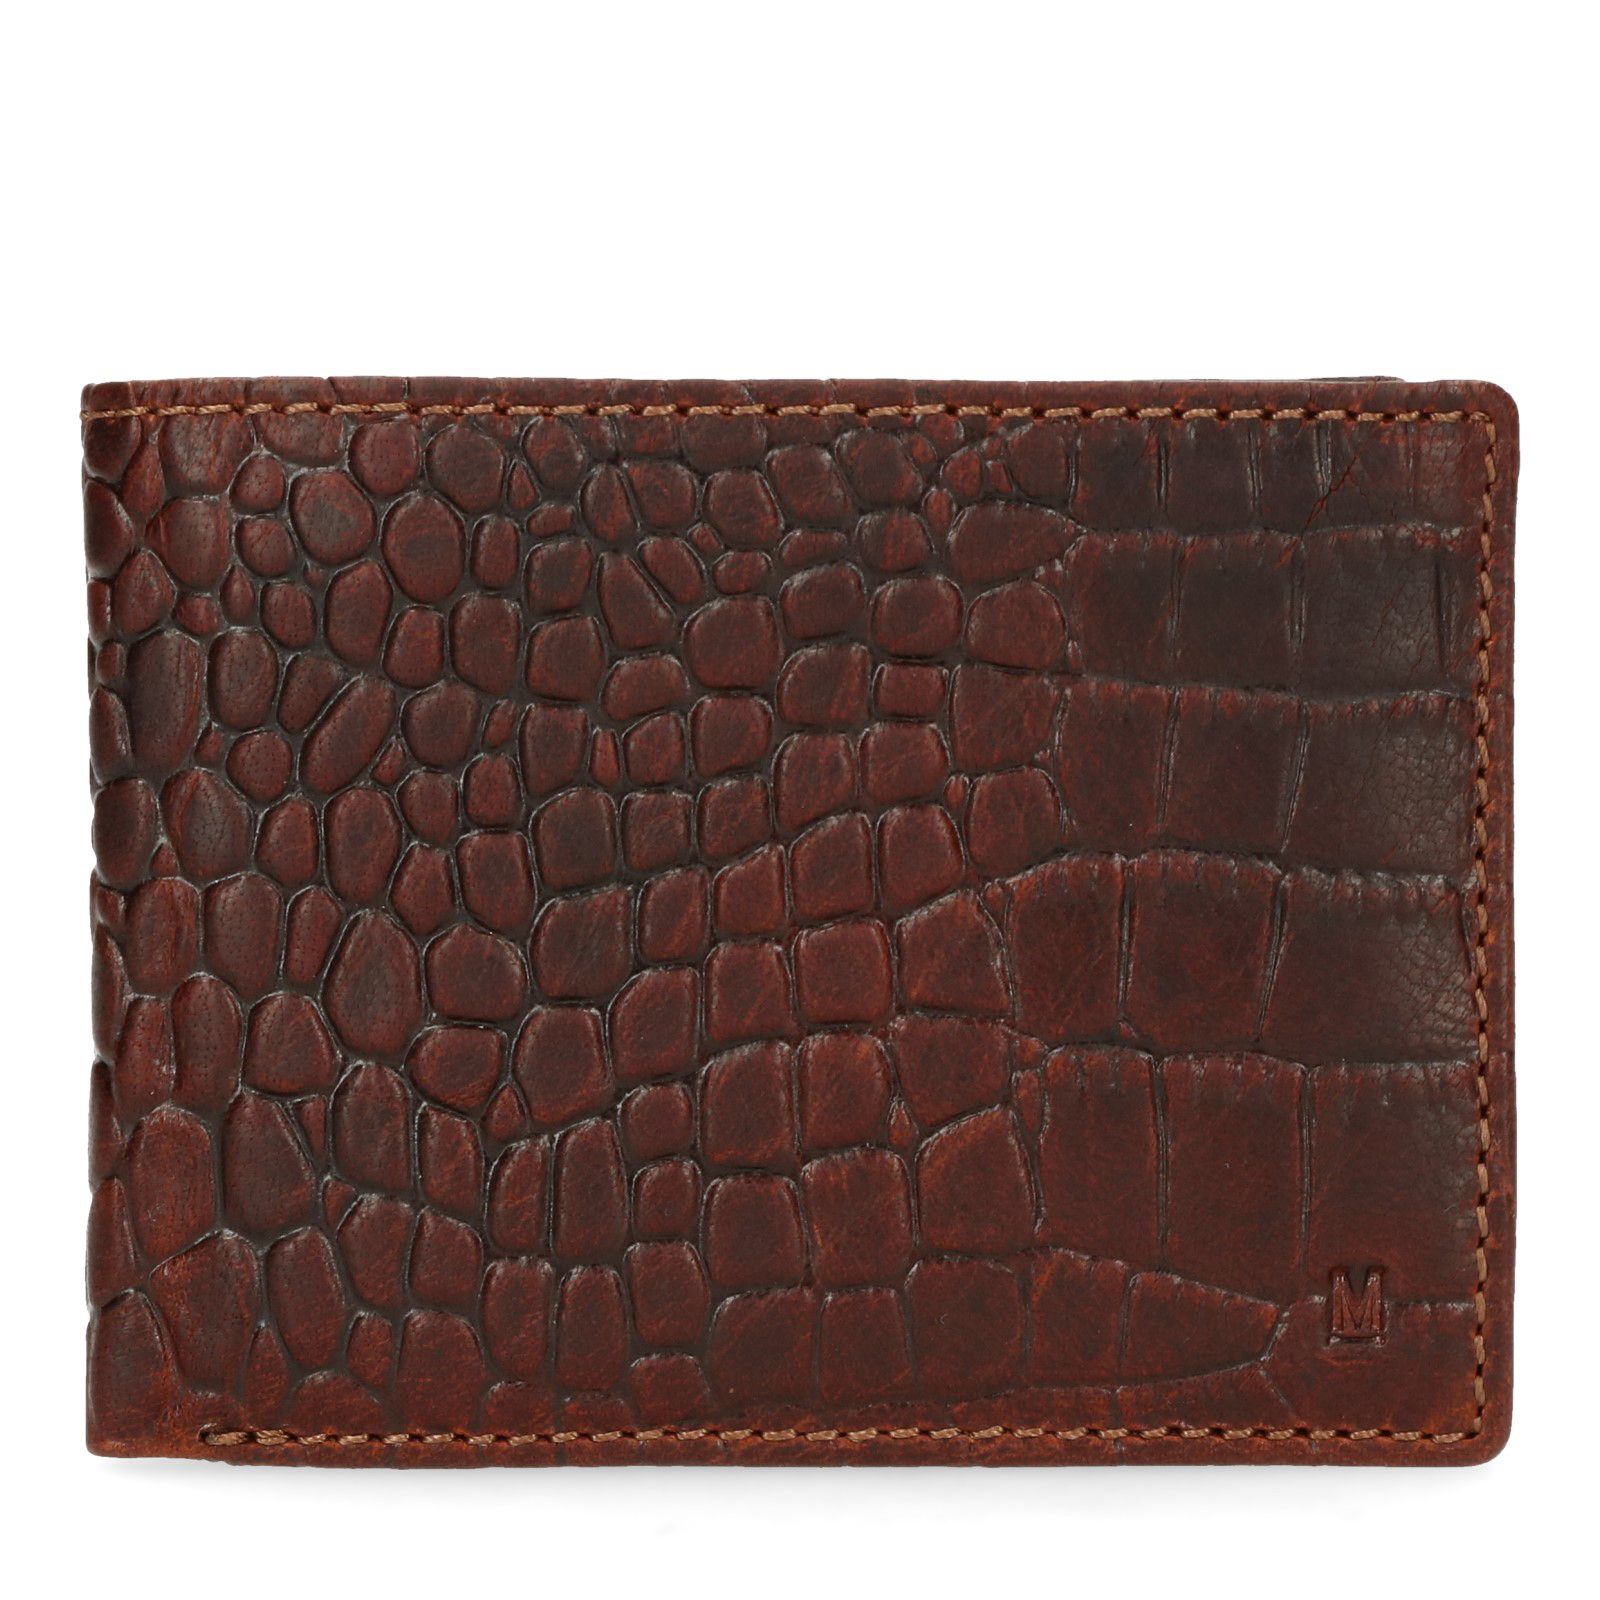 Sandalen moederlijk Piraat Cognac portemonnee met krokodillenprint - Accessoires | MANFIELD